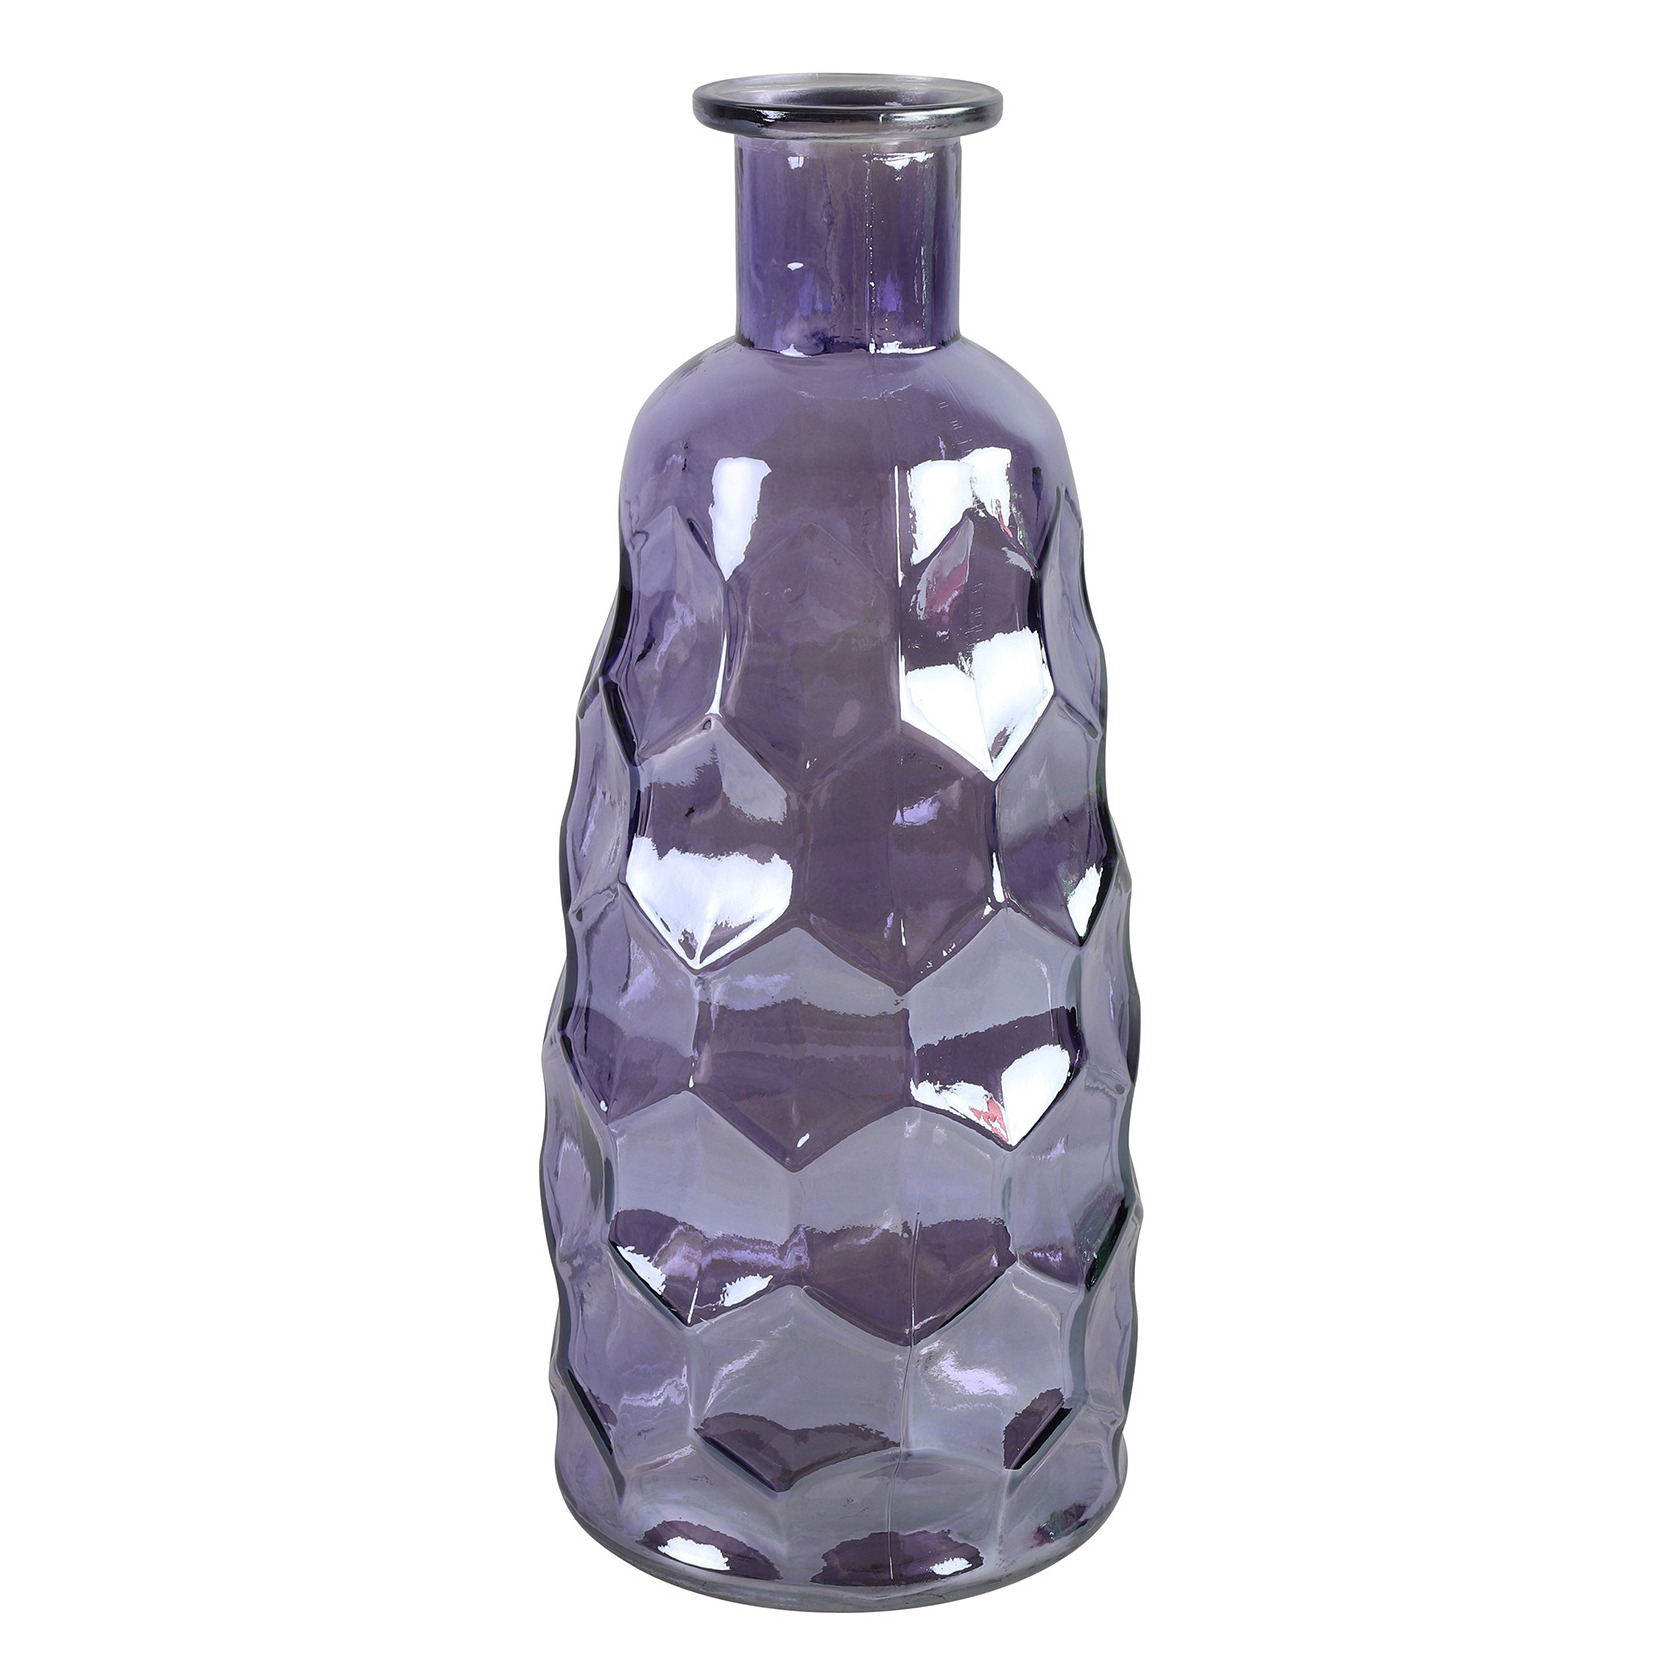 Countryfield Art Deco bloemenvaas paars transparant glas fles vorm D12 x H30 cm